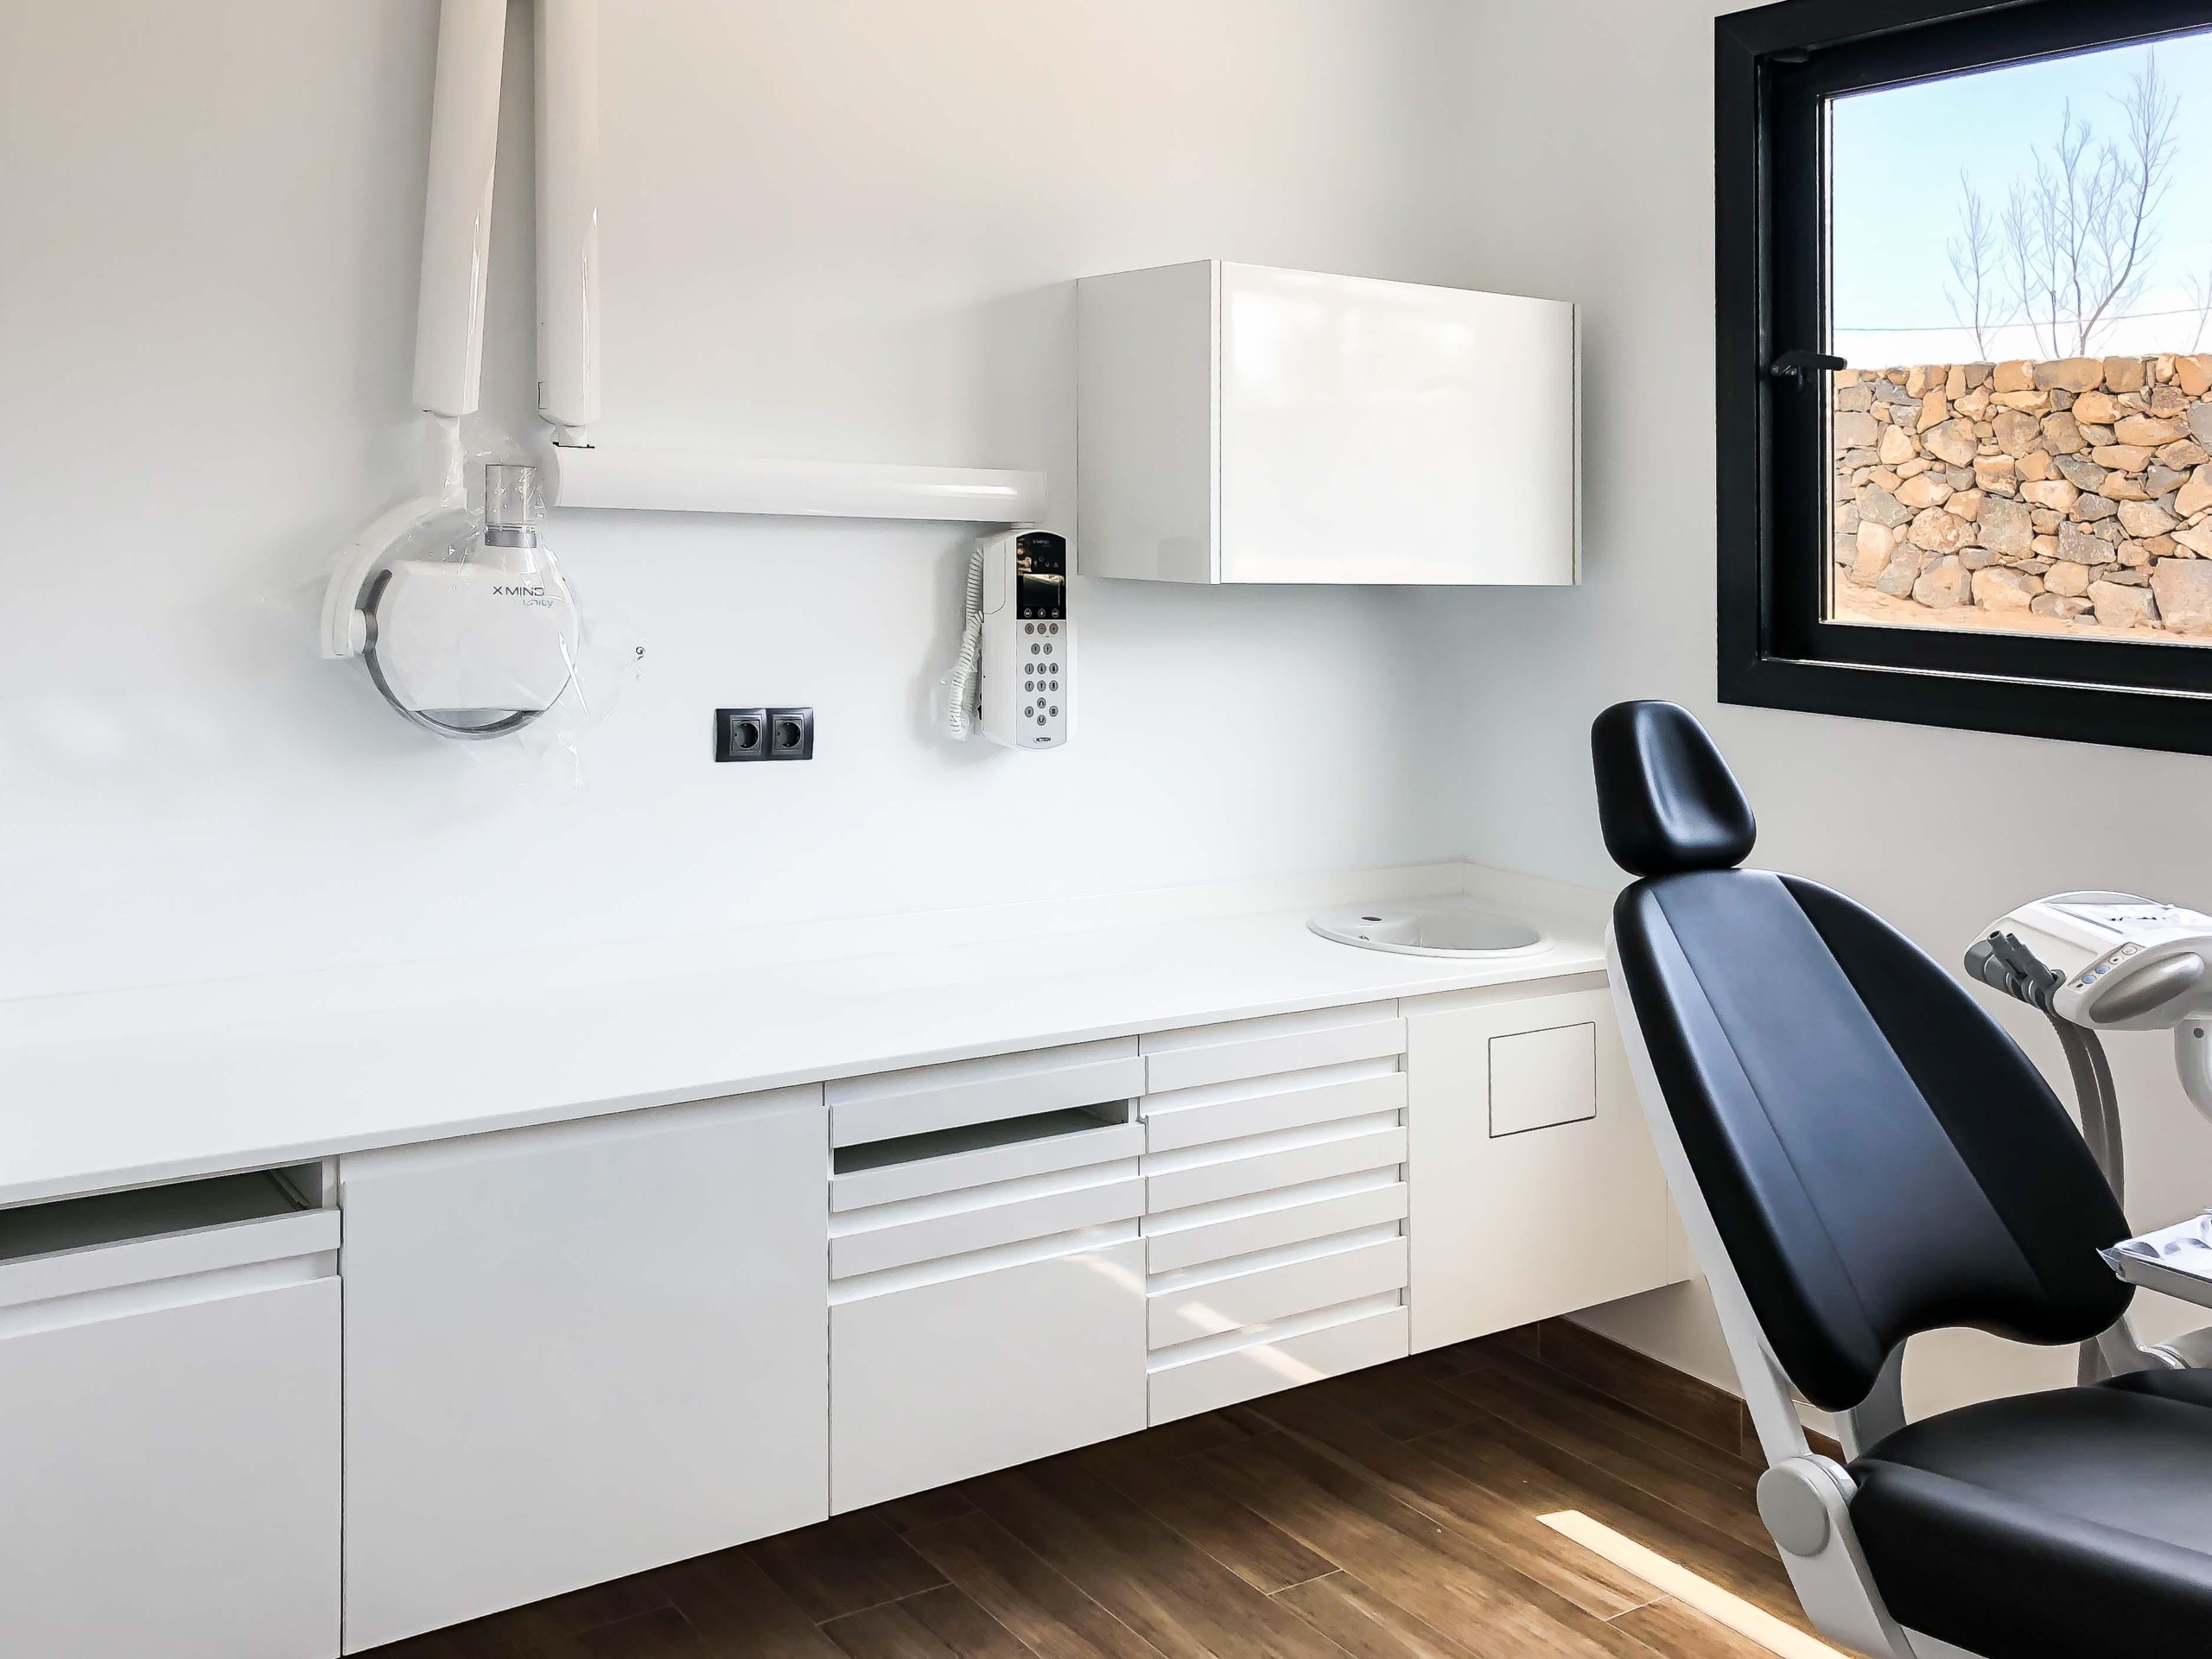 Mobiliario protesico con encimera de color blanca, mueble dispensador,  con ventana al exterior y silla odontologica